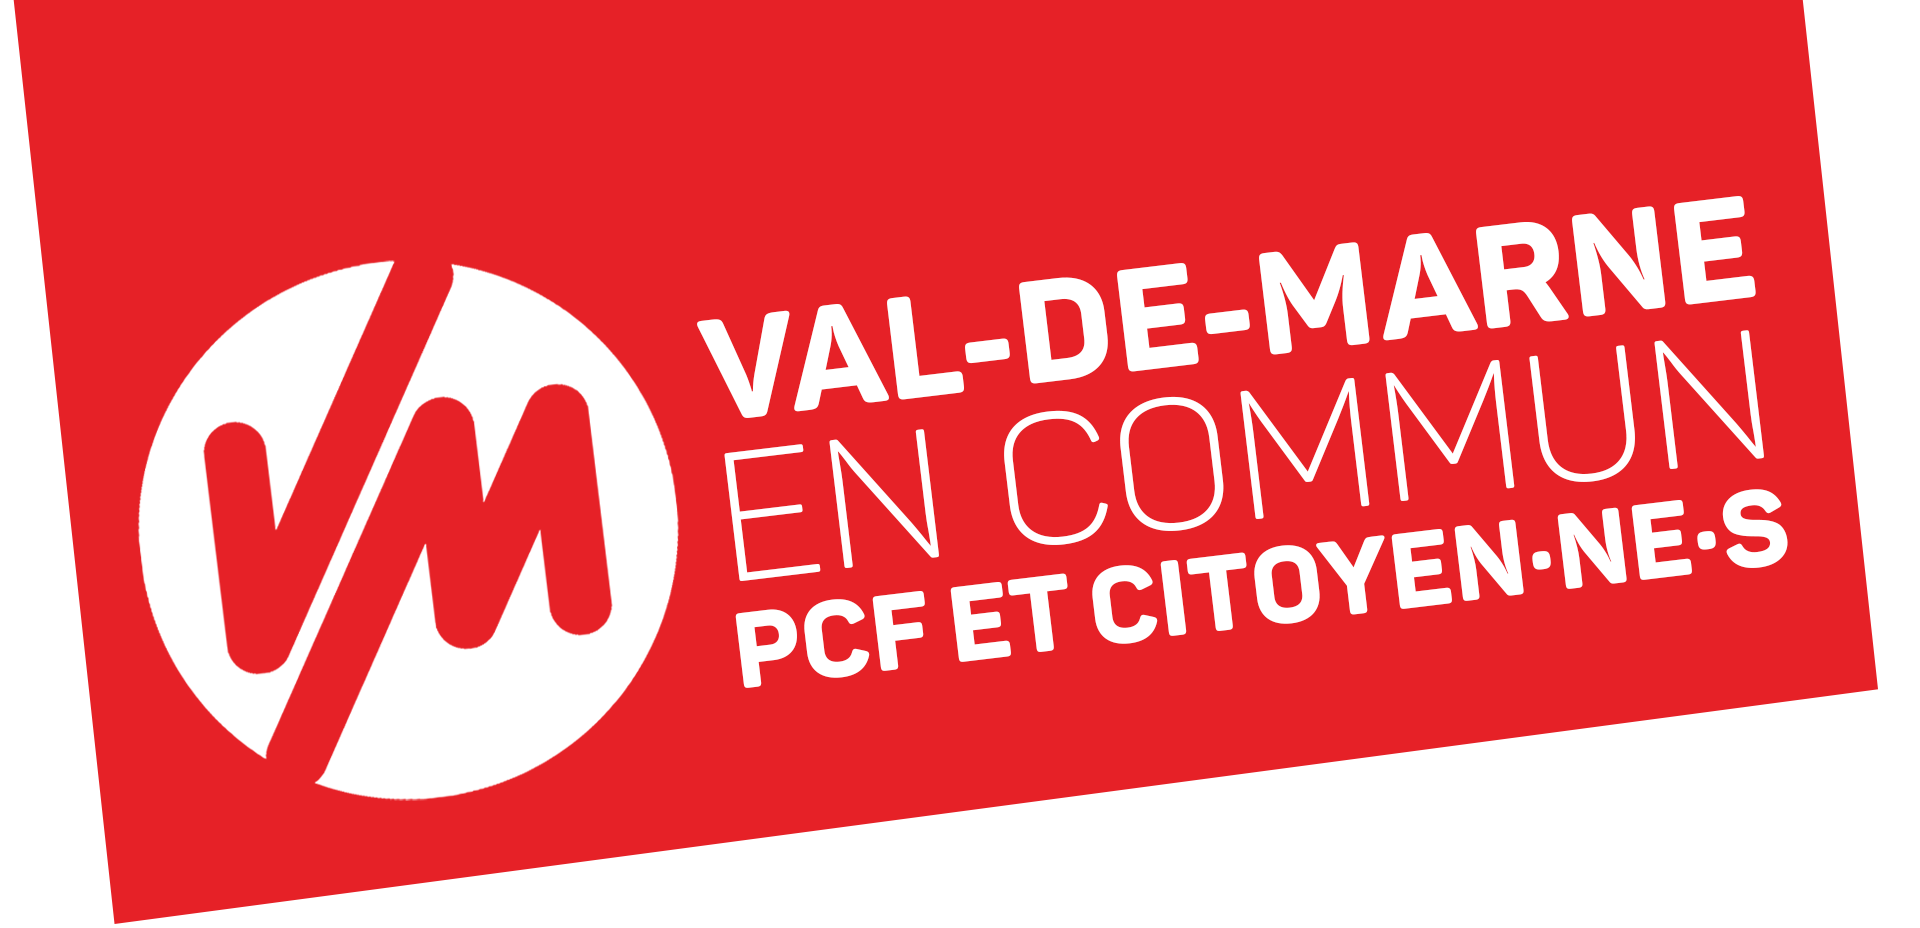 Val-de-Marne en commun – PCF et citoyen·nes